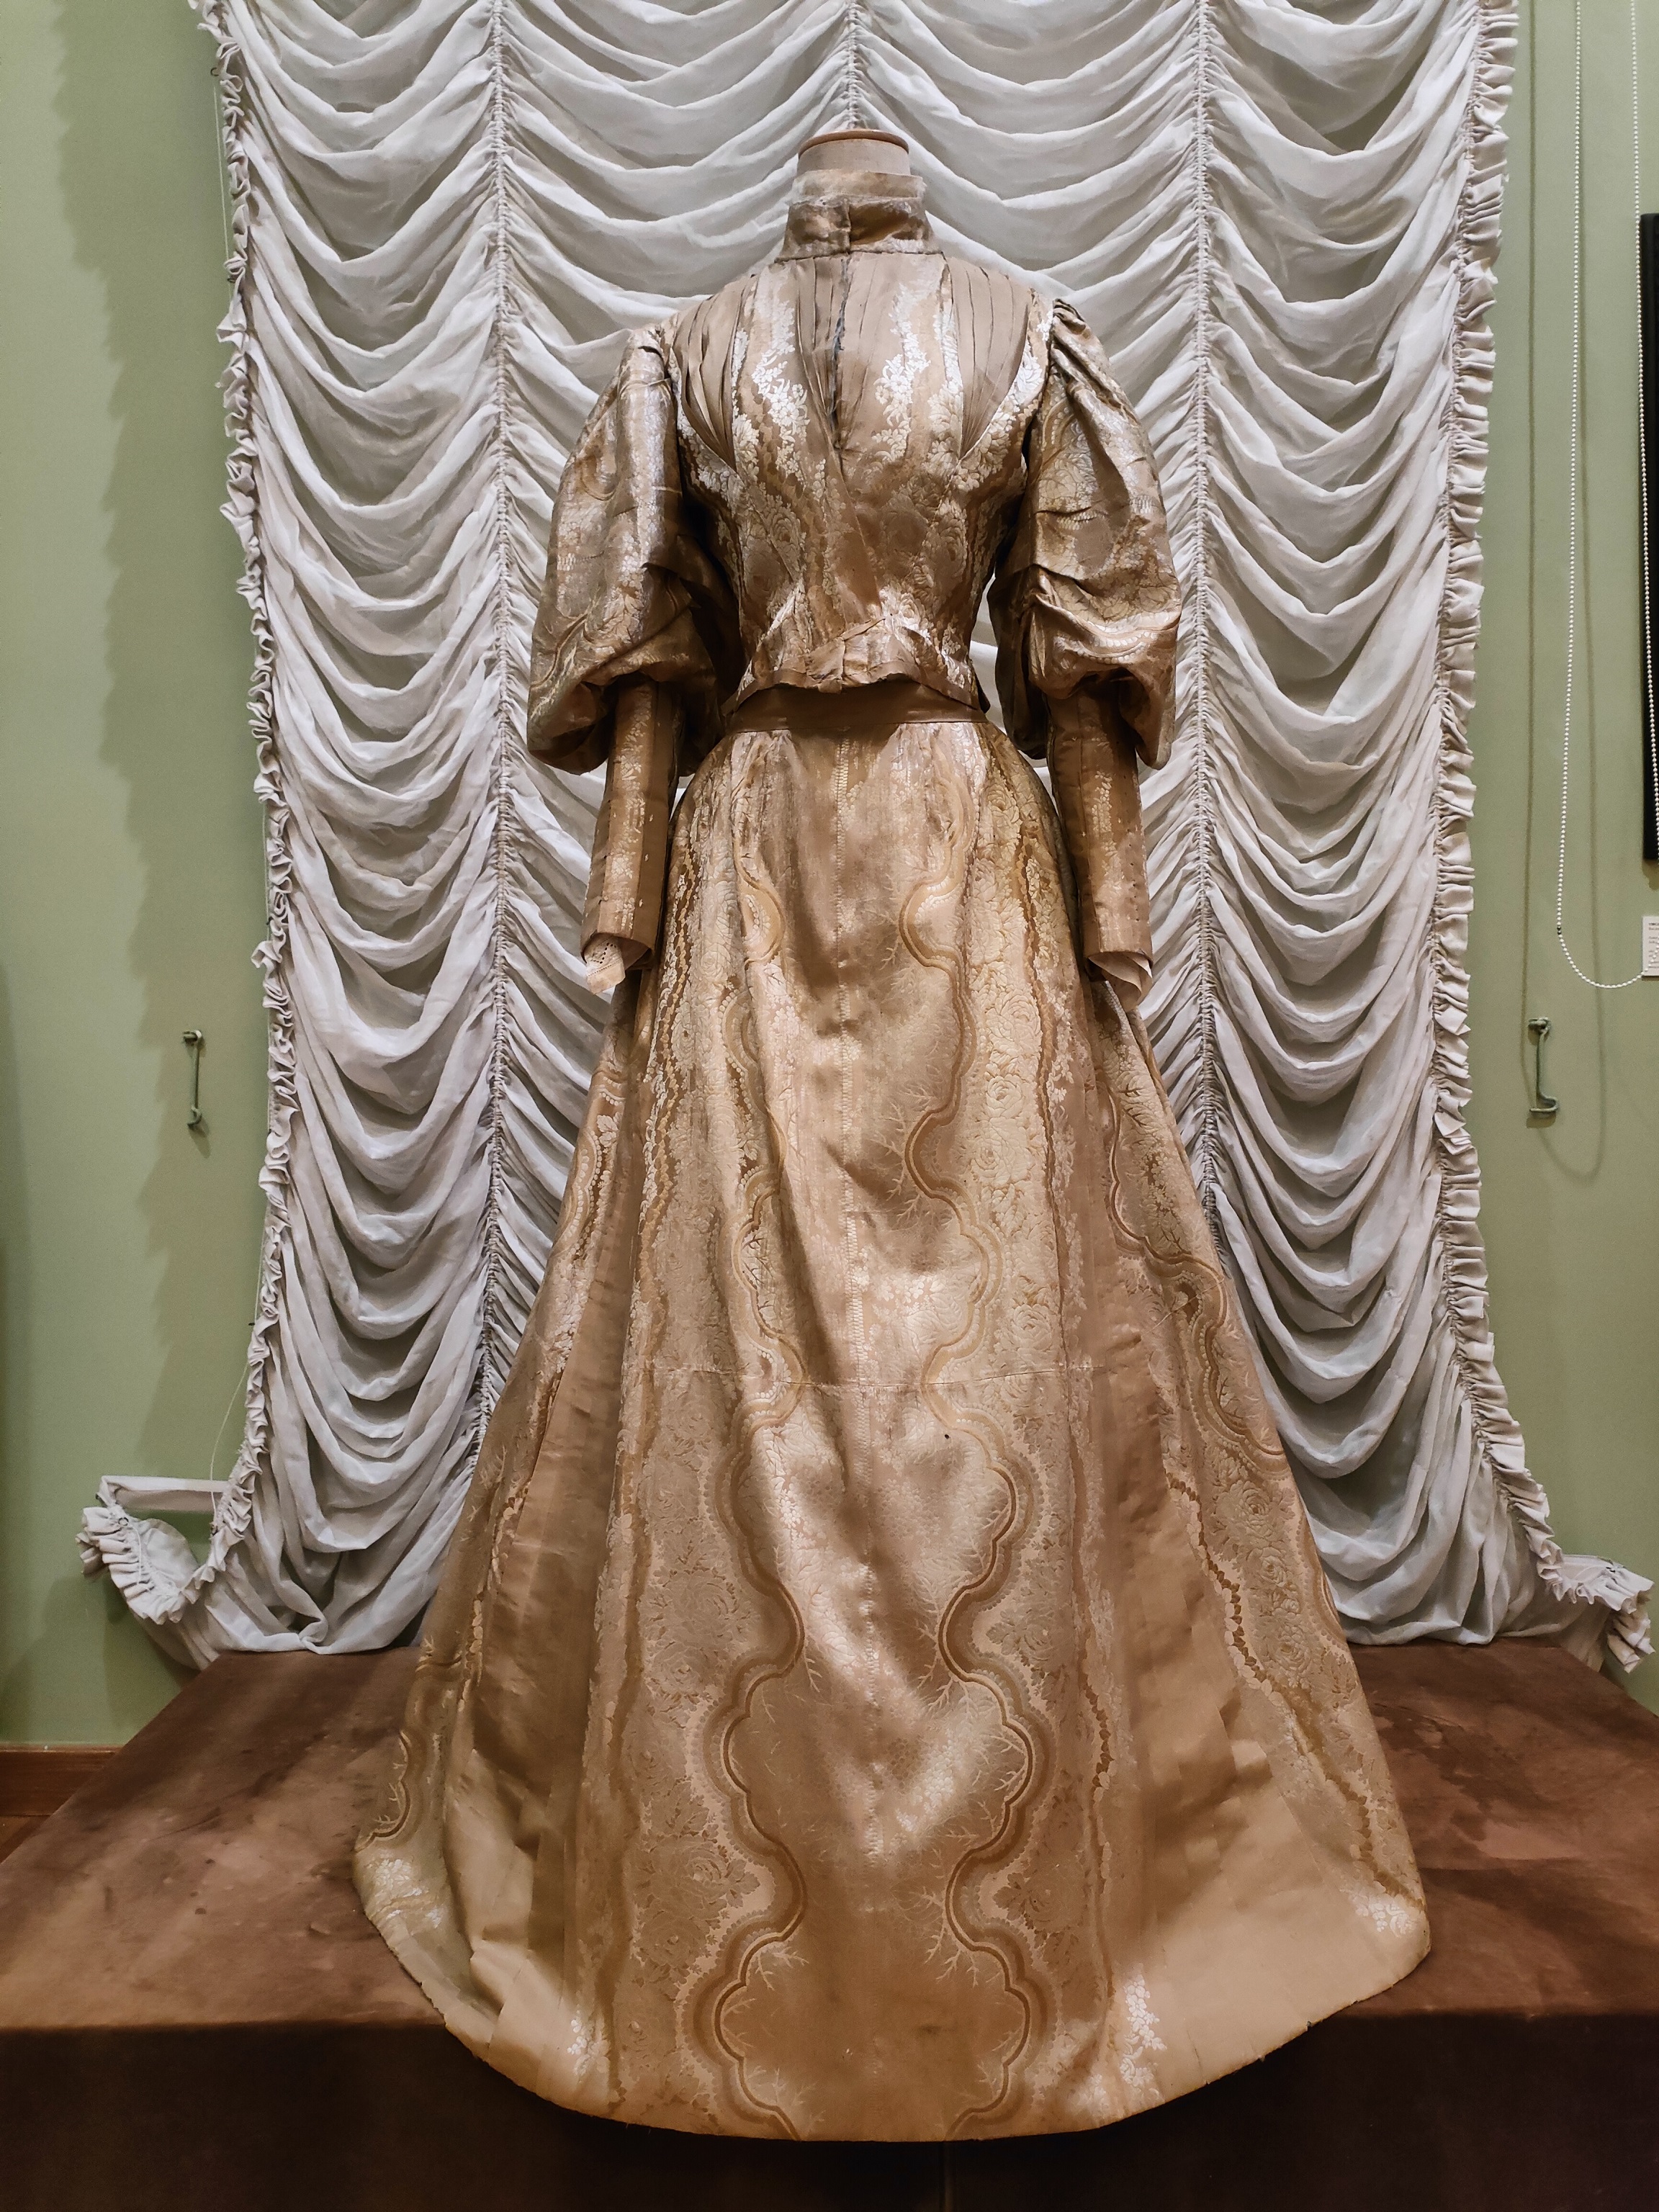 abito da sposa, cavalleresco o civile, da nozze, femminile - manifattura siciliana non identificata (anni novanta XIX)